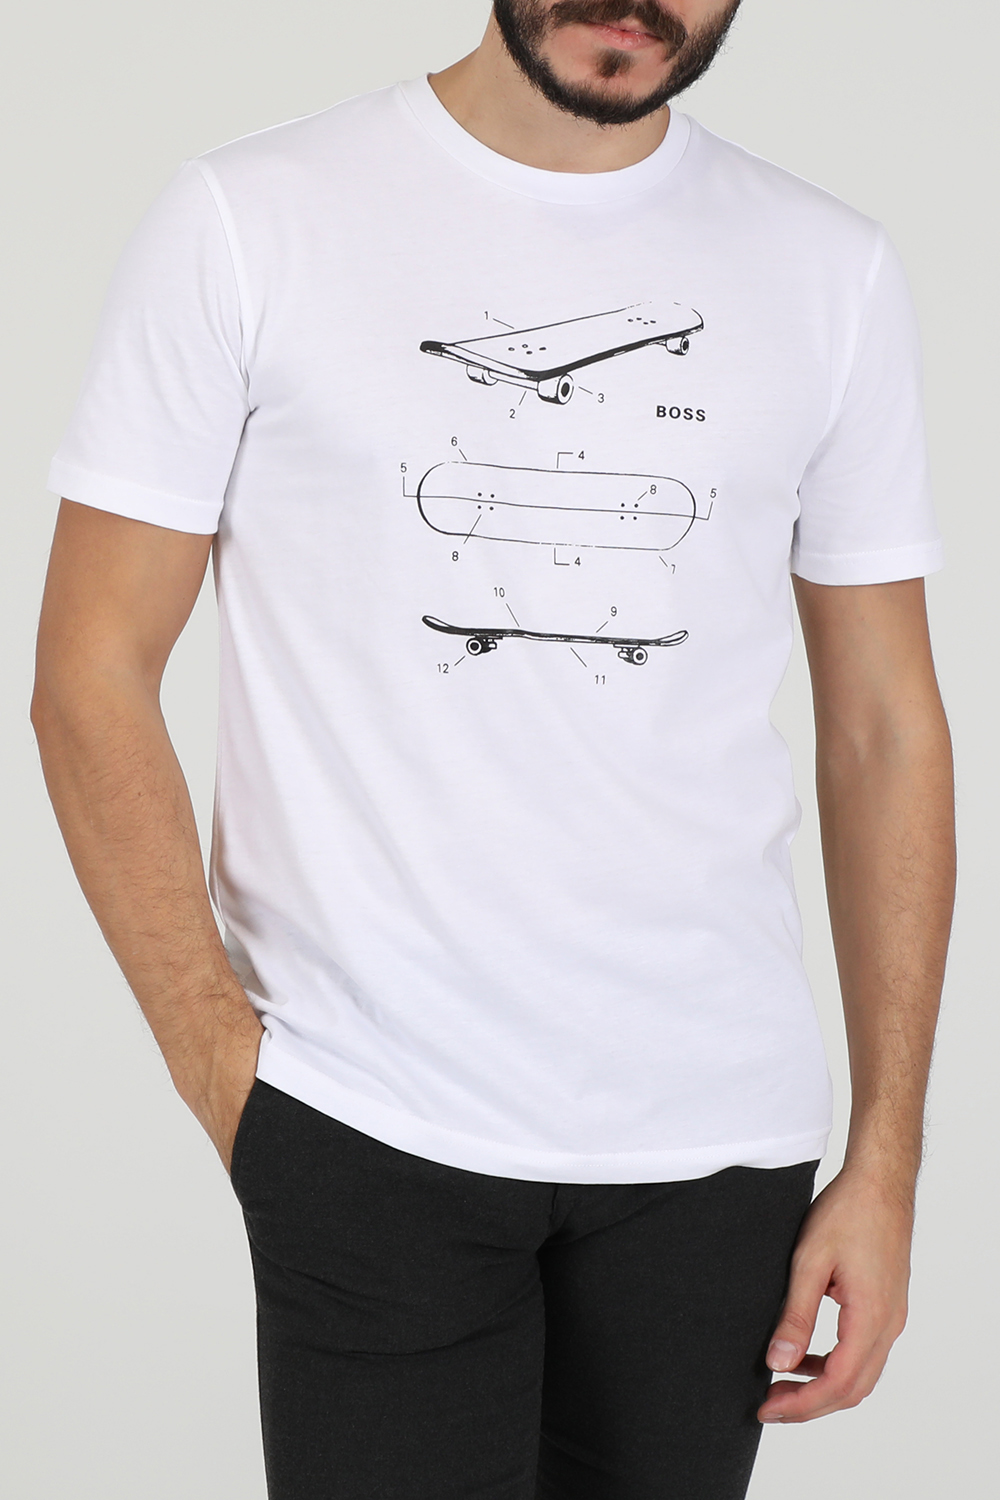 Ανδρικά/Ρούχα/Μπλούζες/Κοντομάνικες BOSS - Ανδρικό t-shirt BOSS TCasette λευκό